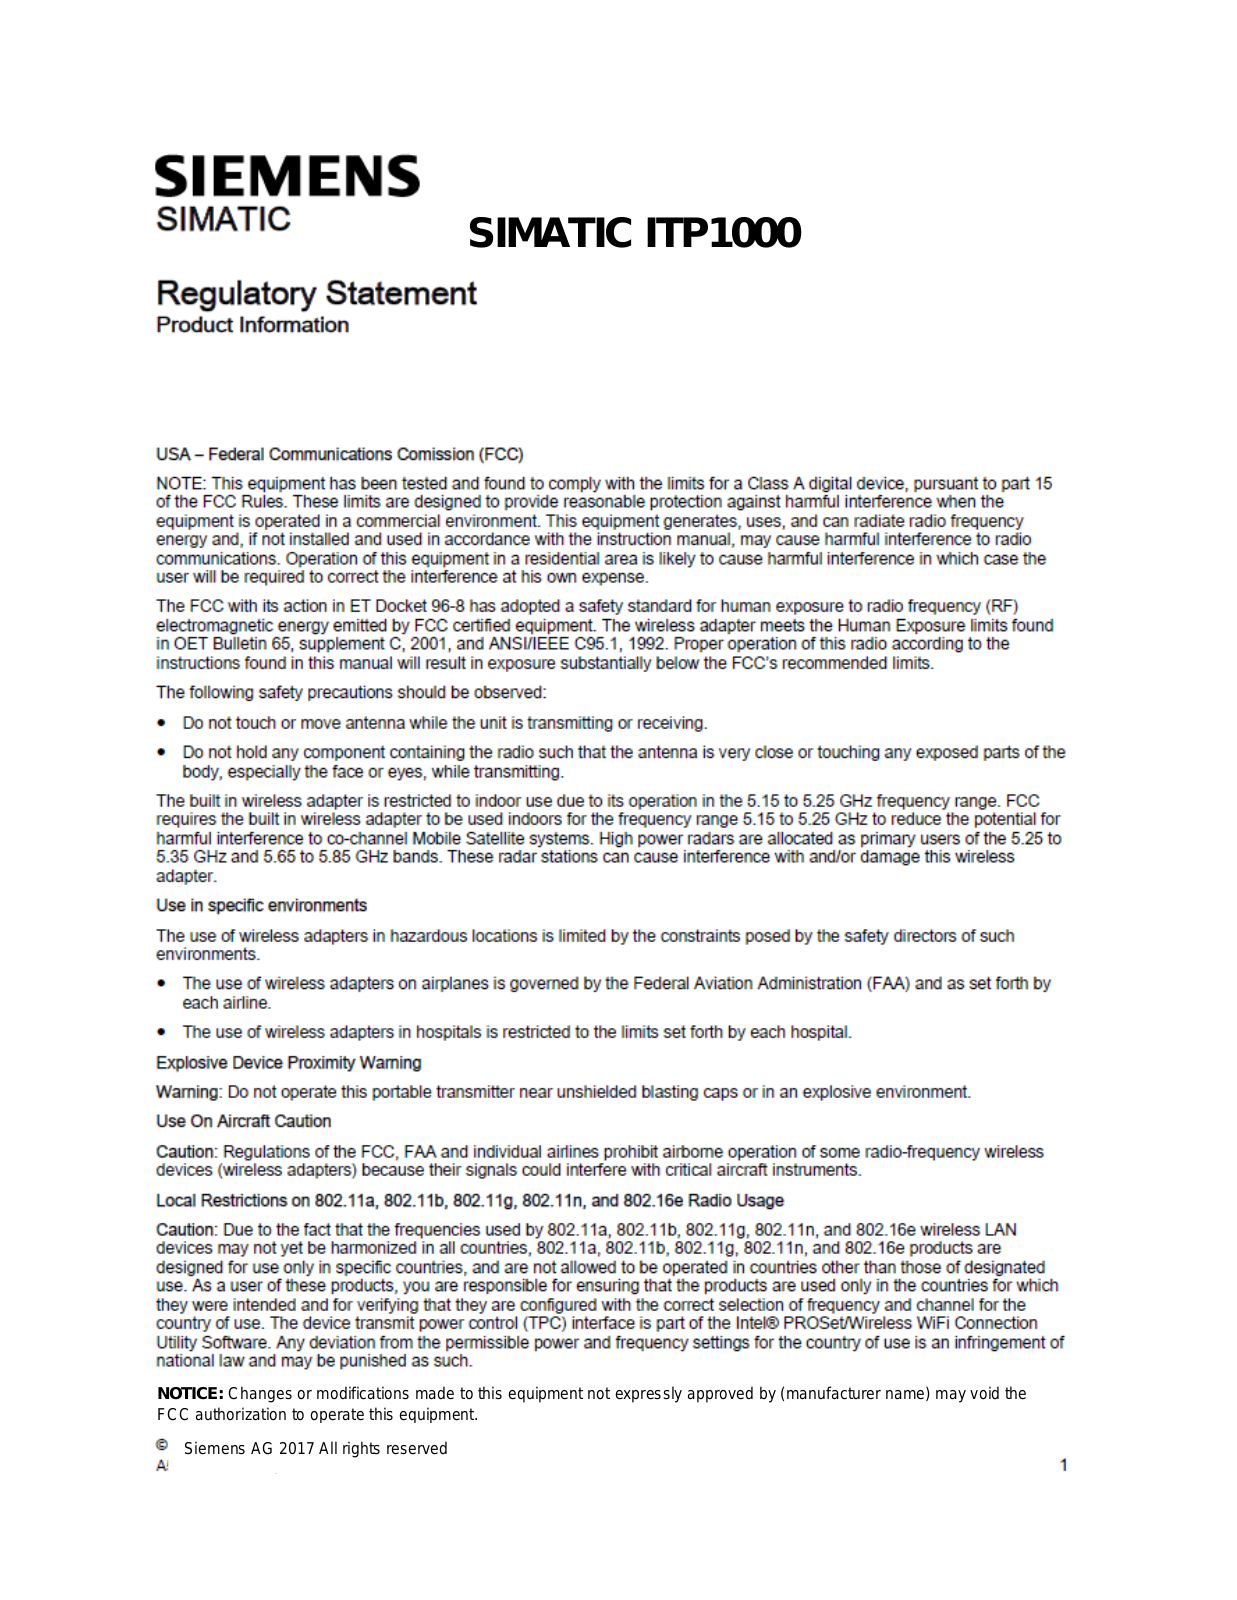 Siemens ITP1000 User Manual